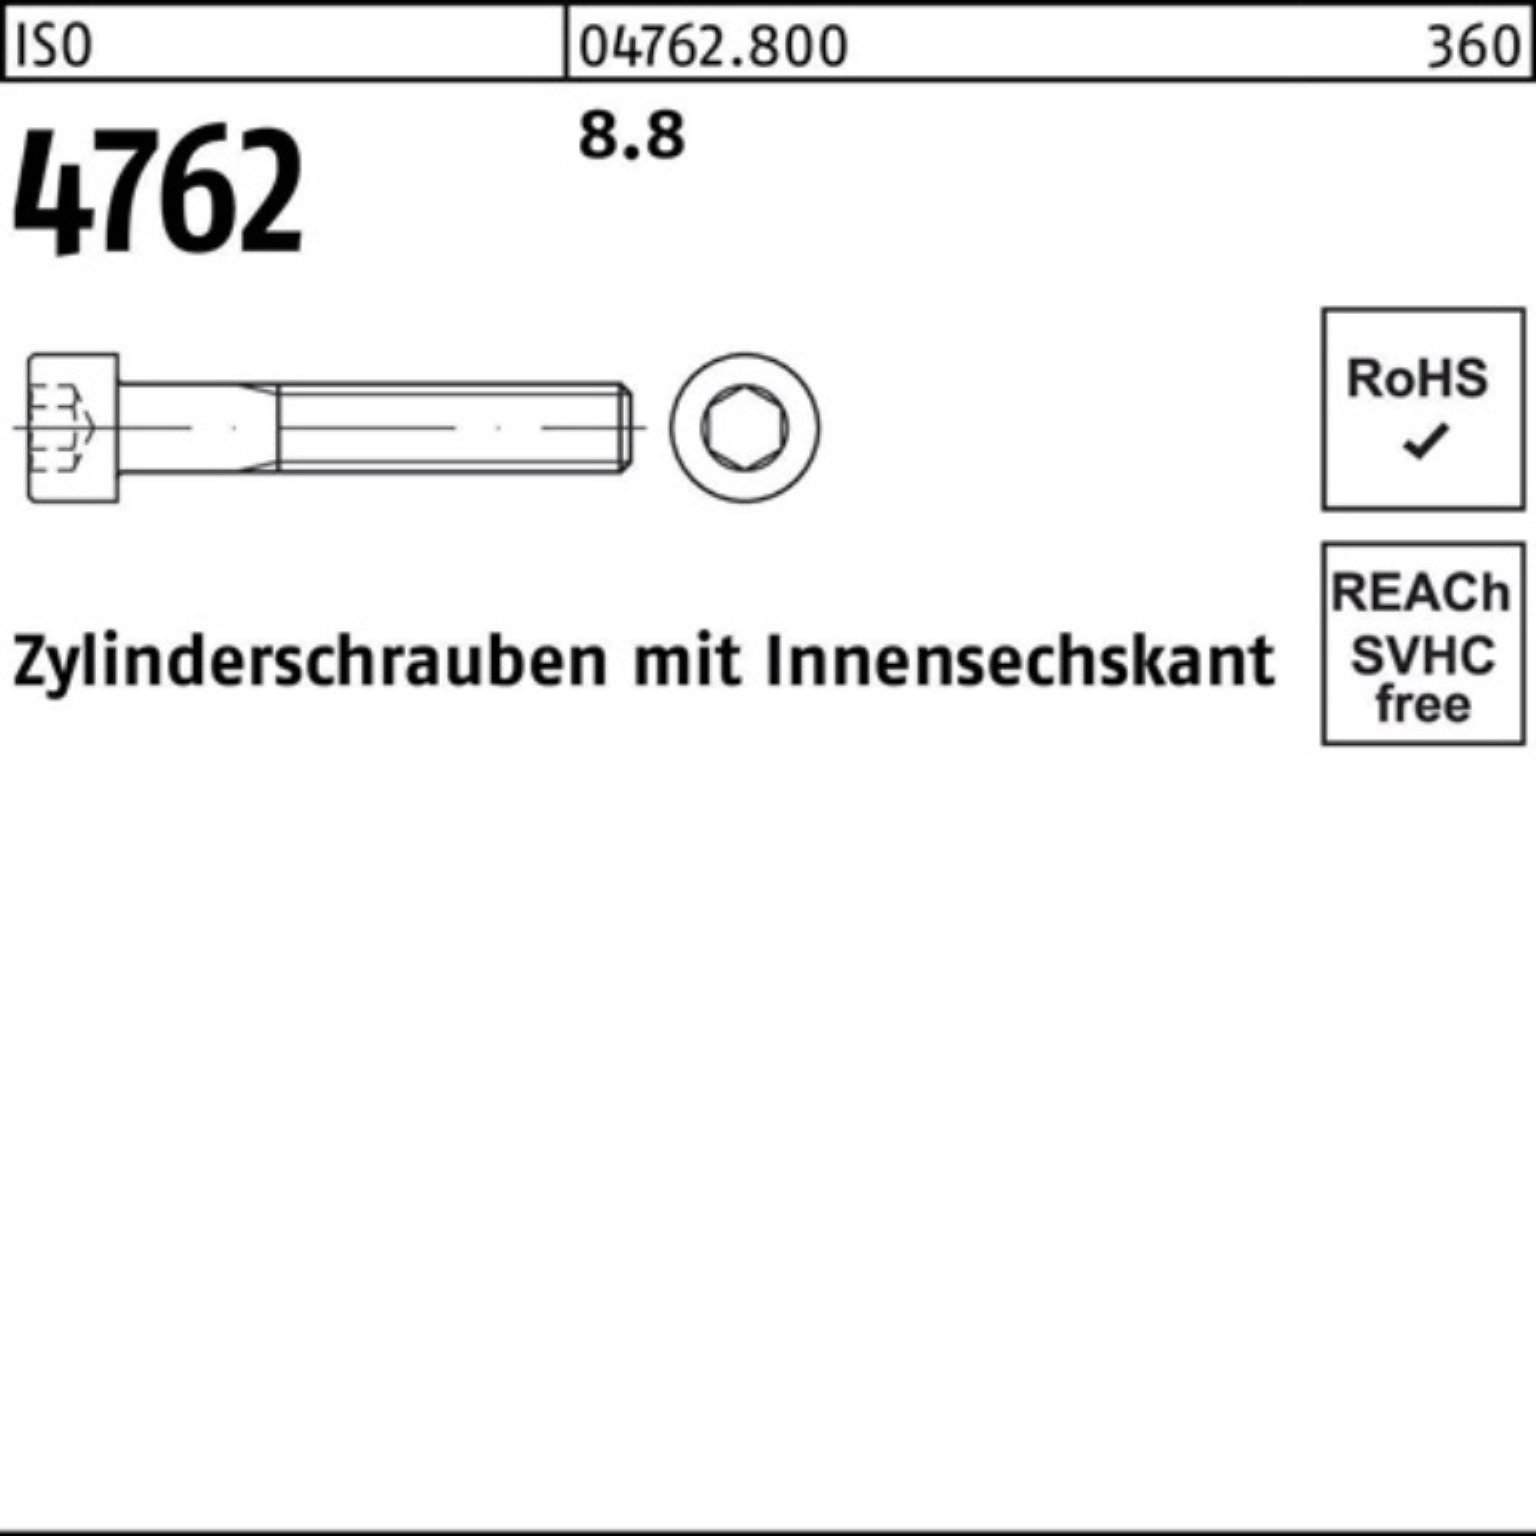 ISO 8.8 500 IS Stück Innen-6kt Zylinderschraube M4x 500er Pack Reyher 4762 8 Zylinderschraube